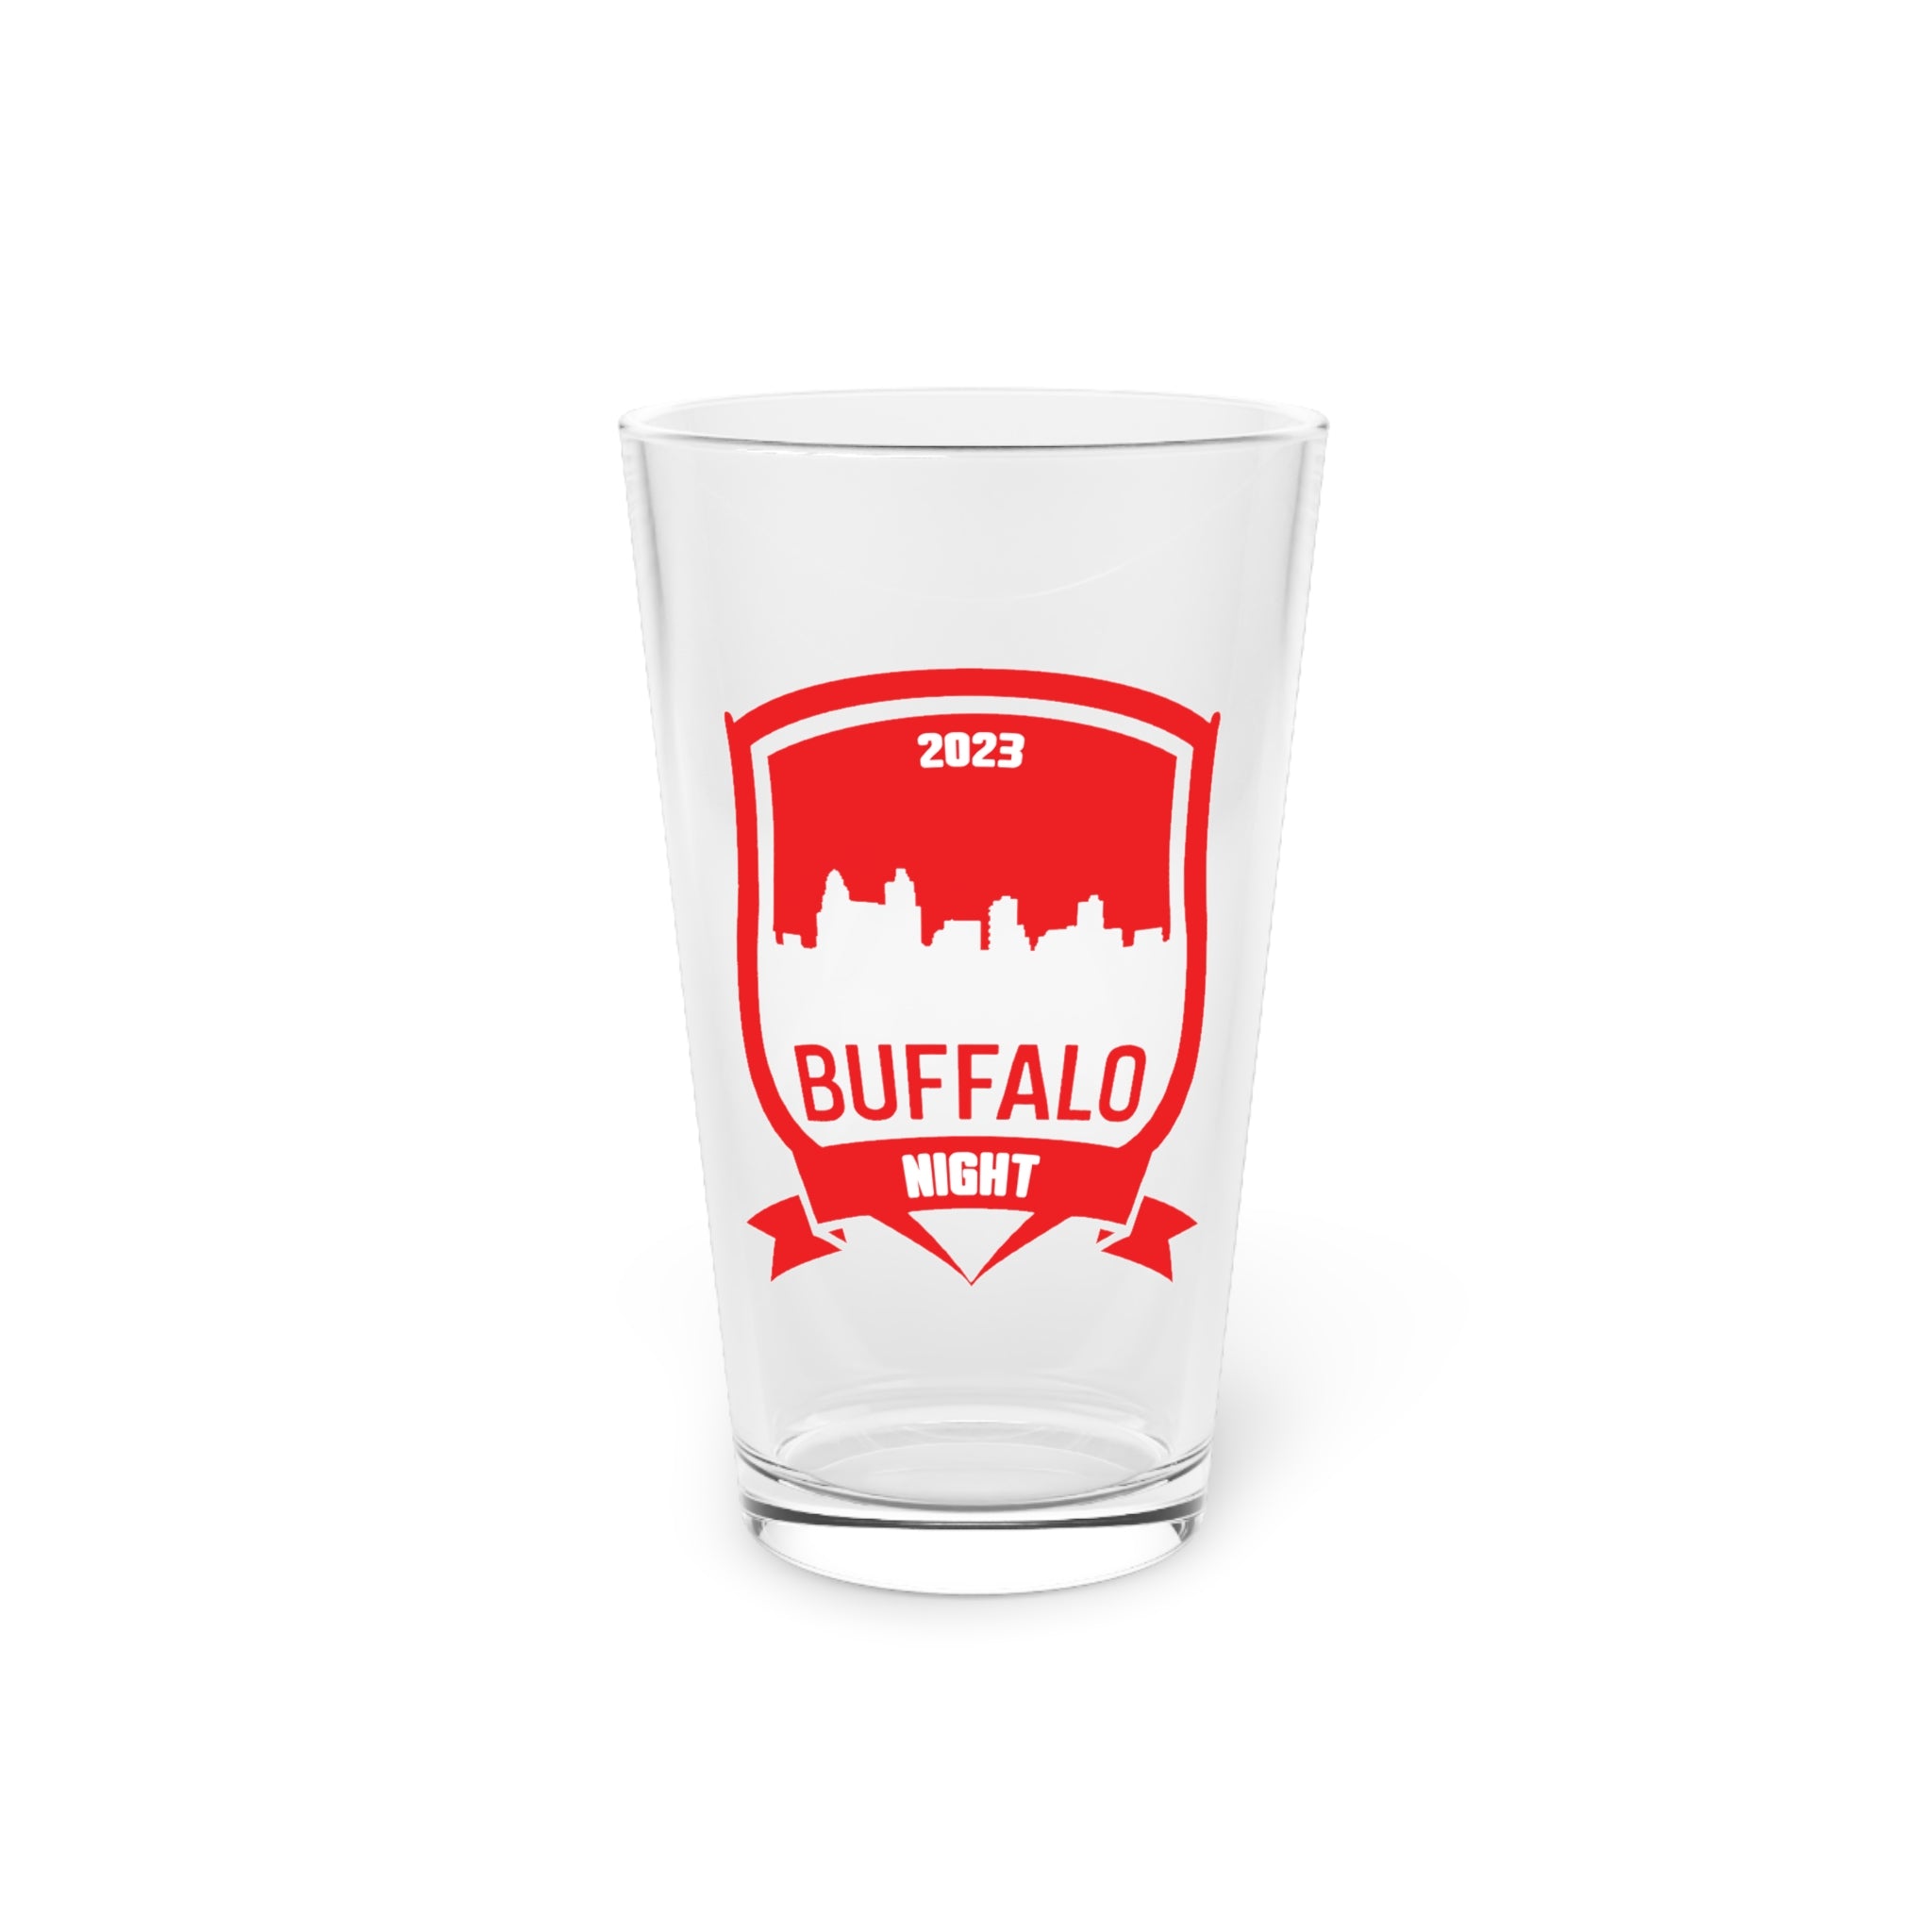 Buffalo Night Red Pint Glass, 16oz